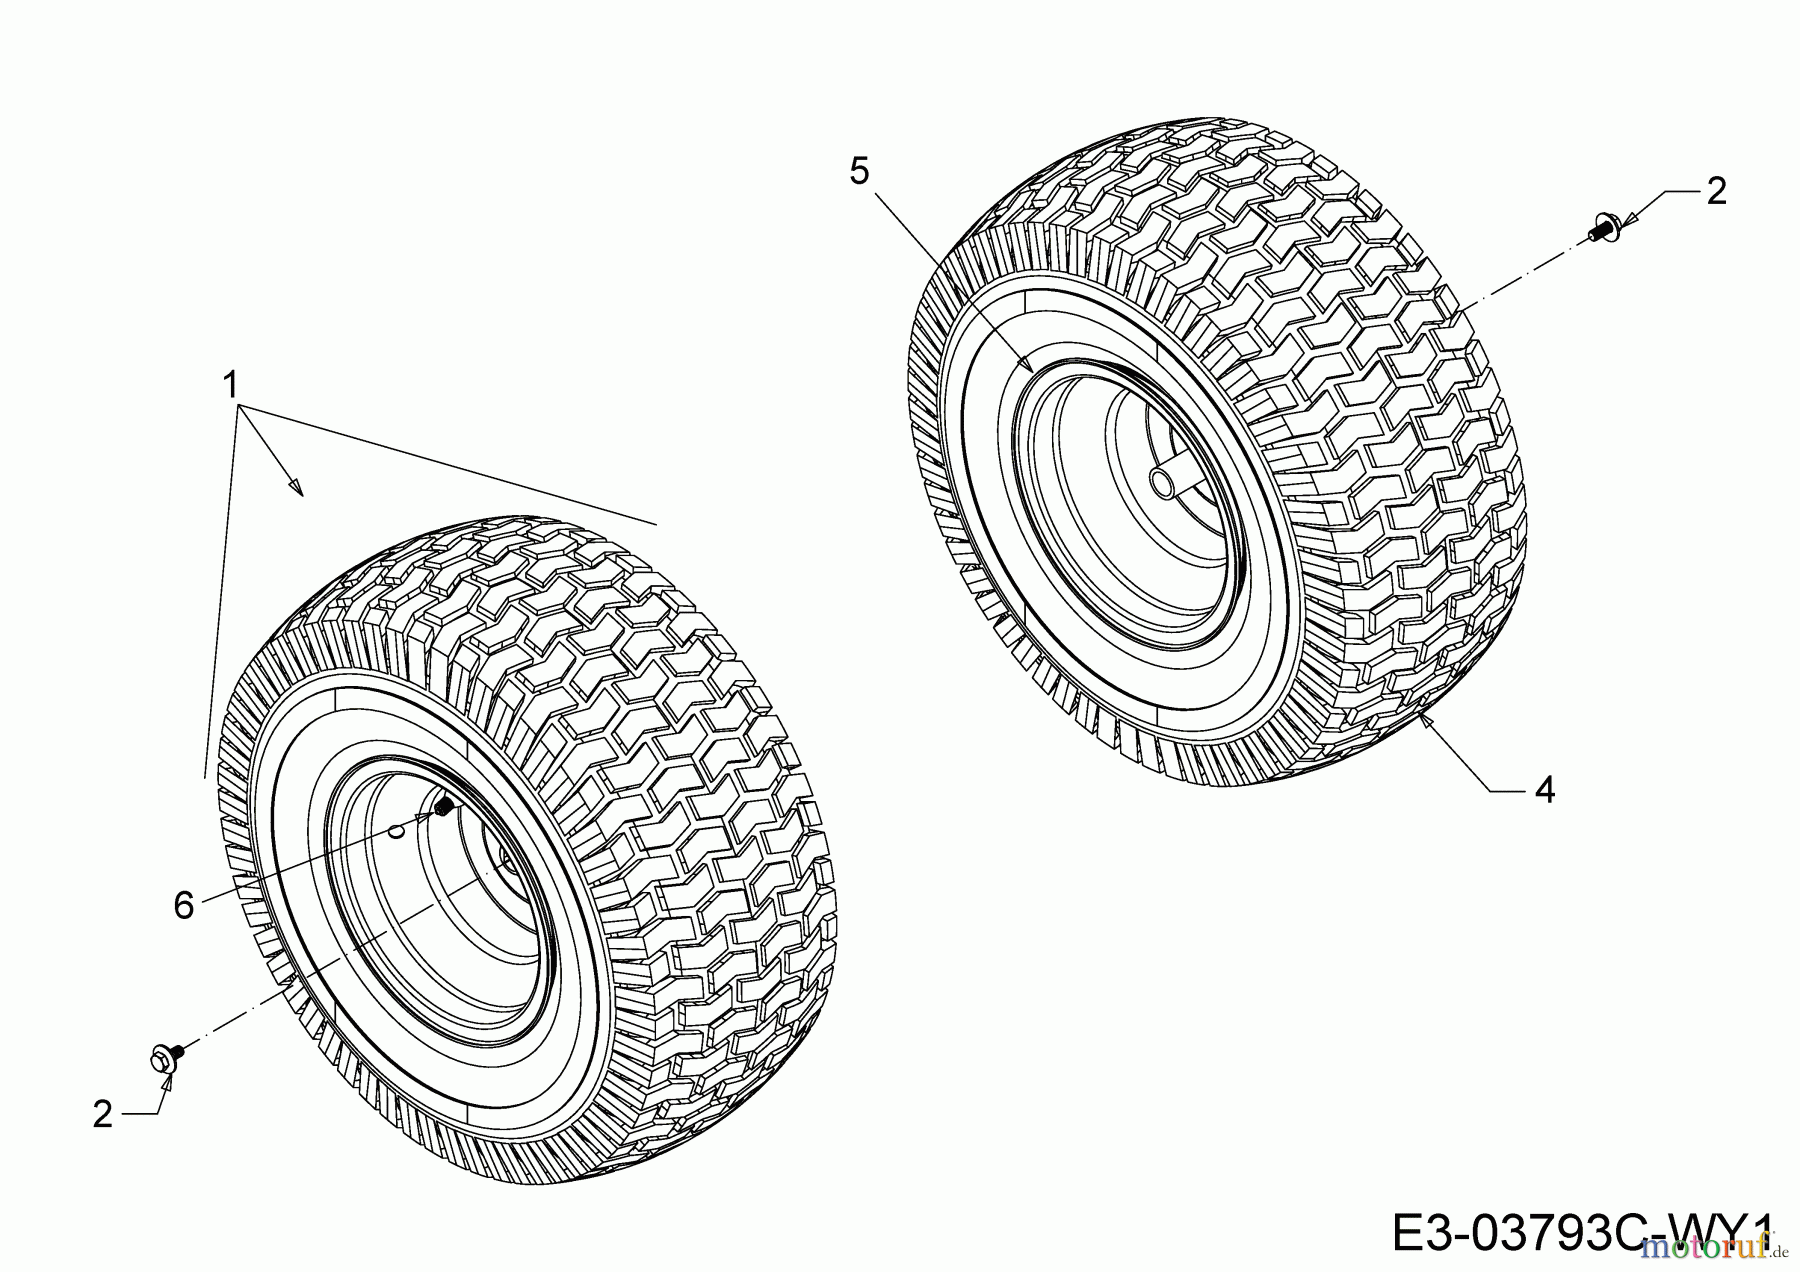  Wolf-Garten Lawn tractors 96.130 T 13HH76WF650  (2018) Rear wheels